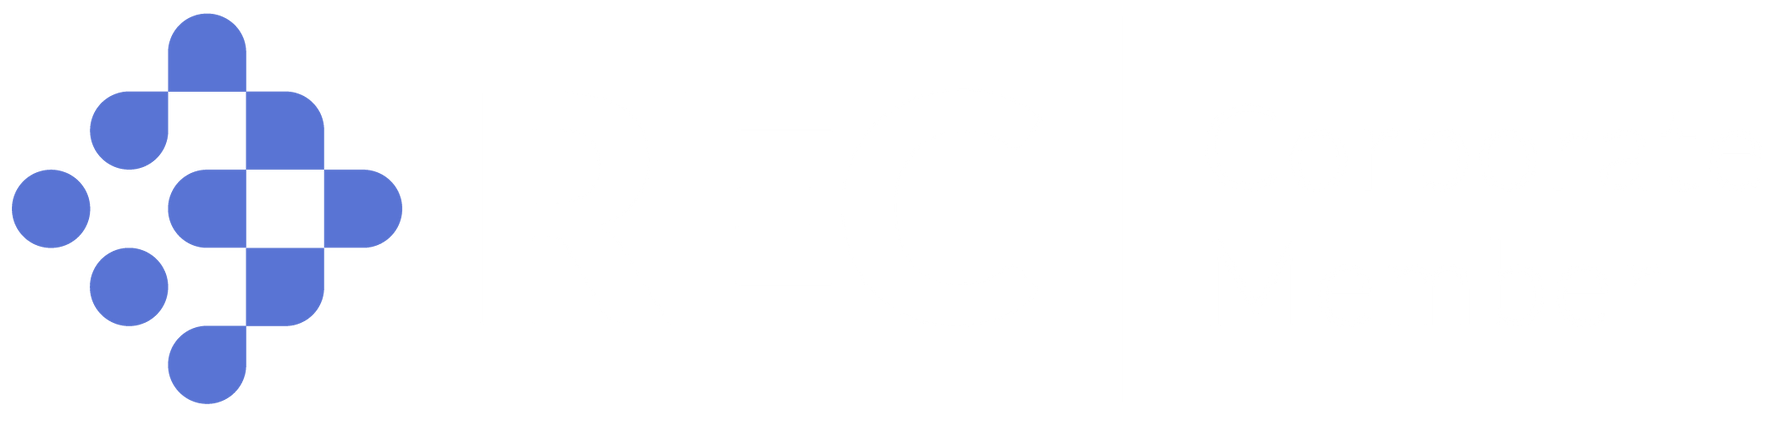 rec corporate member logo